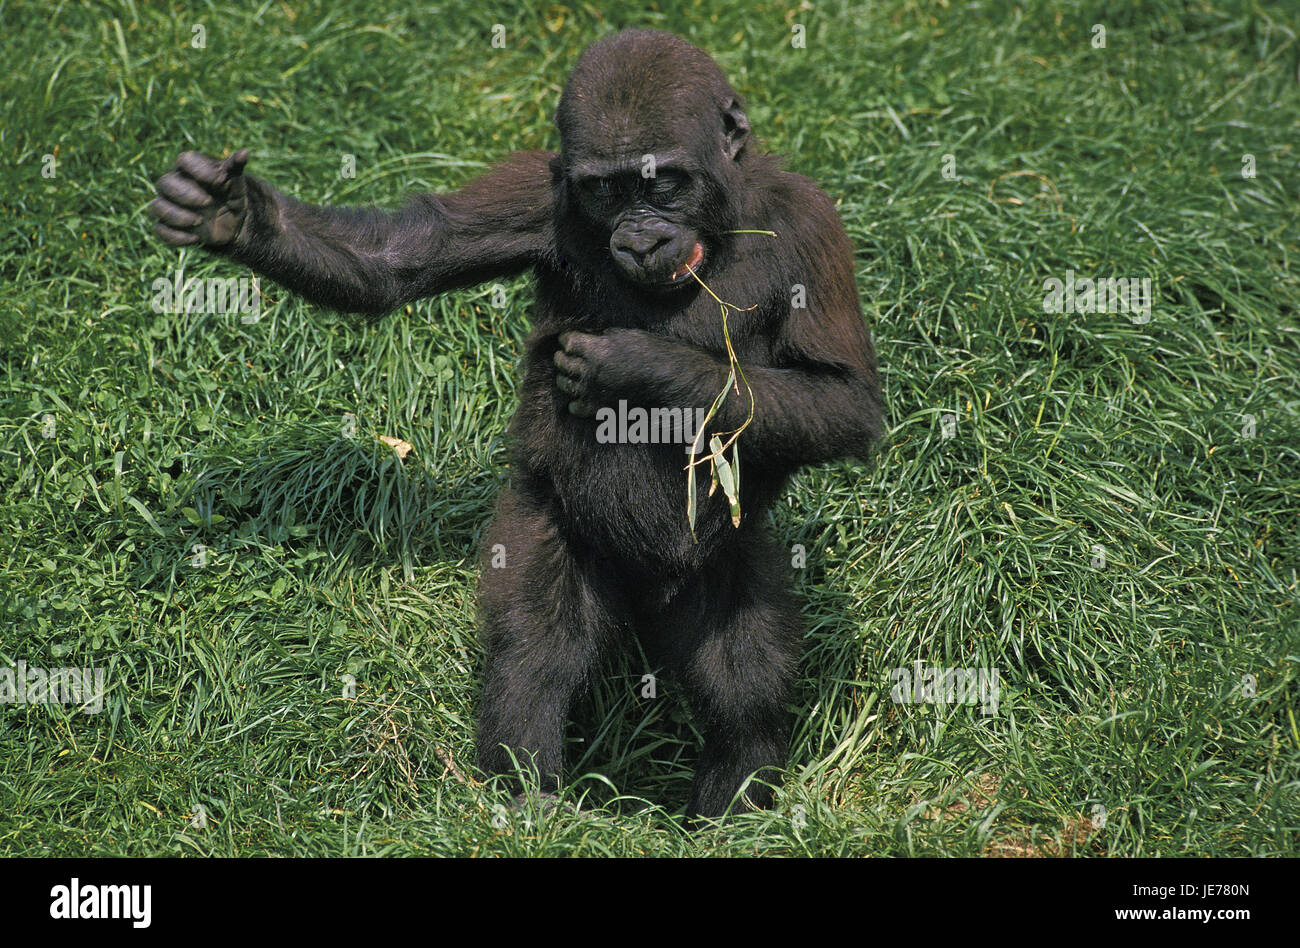 Pianura orientale gorilla gorilla beringei graueri, anche grigia gorilla giovane animale, erba, stand, Foto Stock